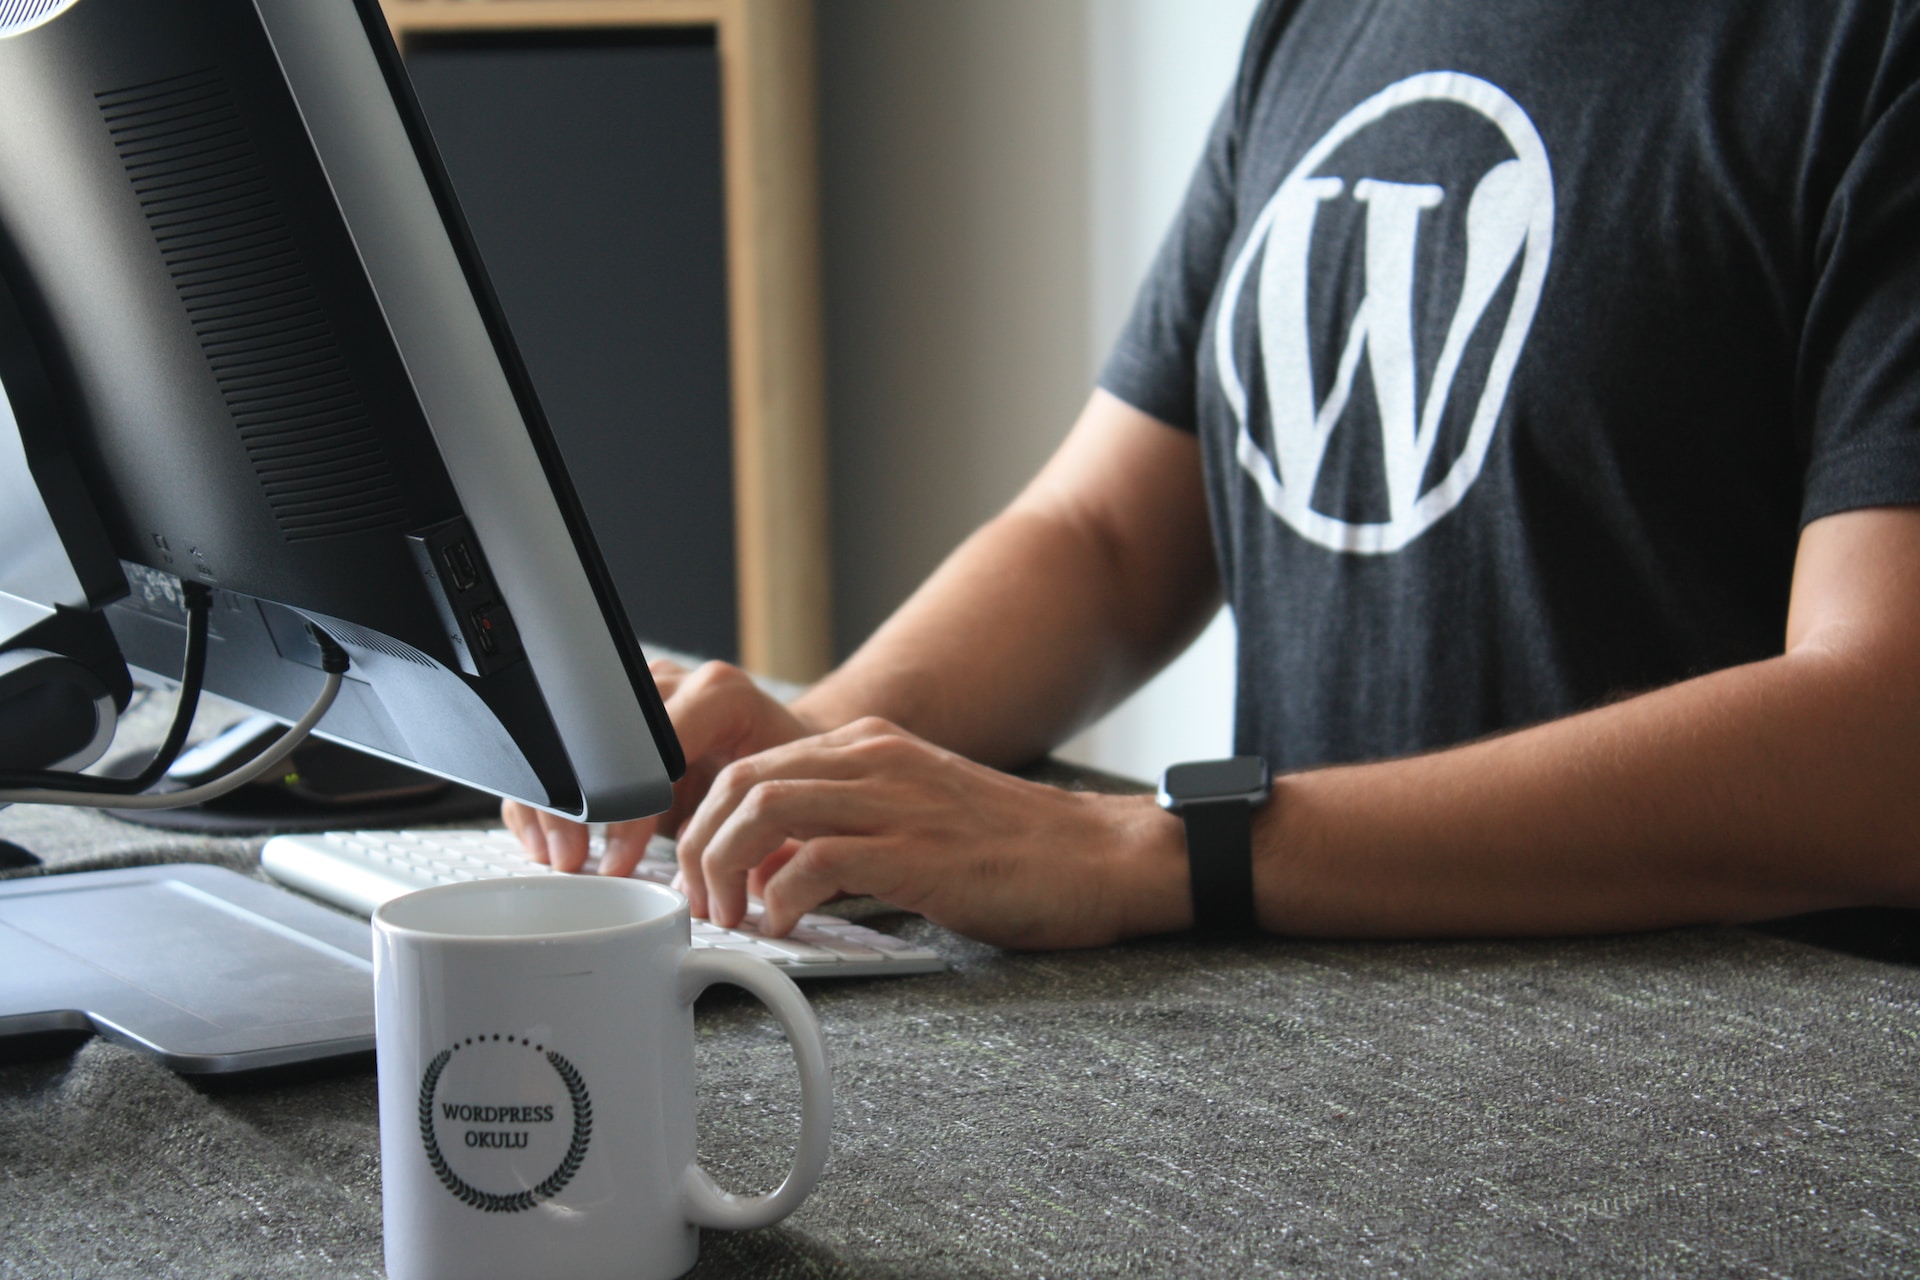 Programmierer trägt ein T-Shirt mit WordPress-Logo